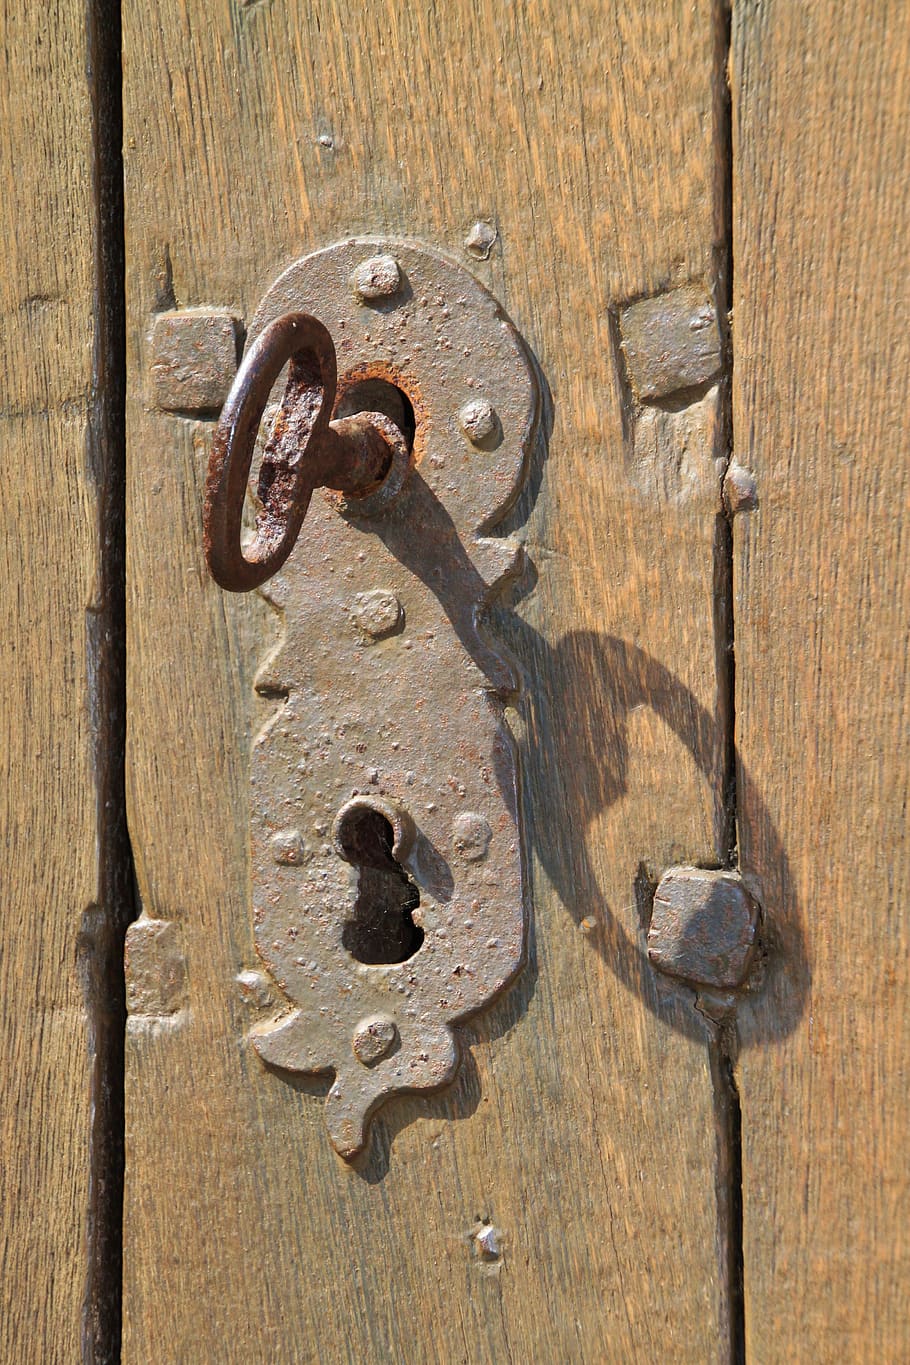 Llave, orificio de llave, óxido, hierro, guarniciones, cerraduras, cerradura de la puerta, metal, viejo, grano